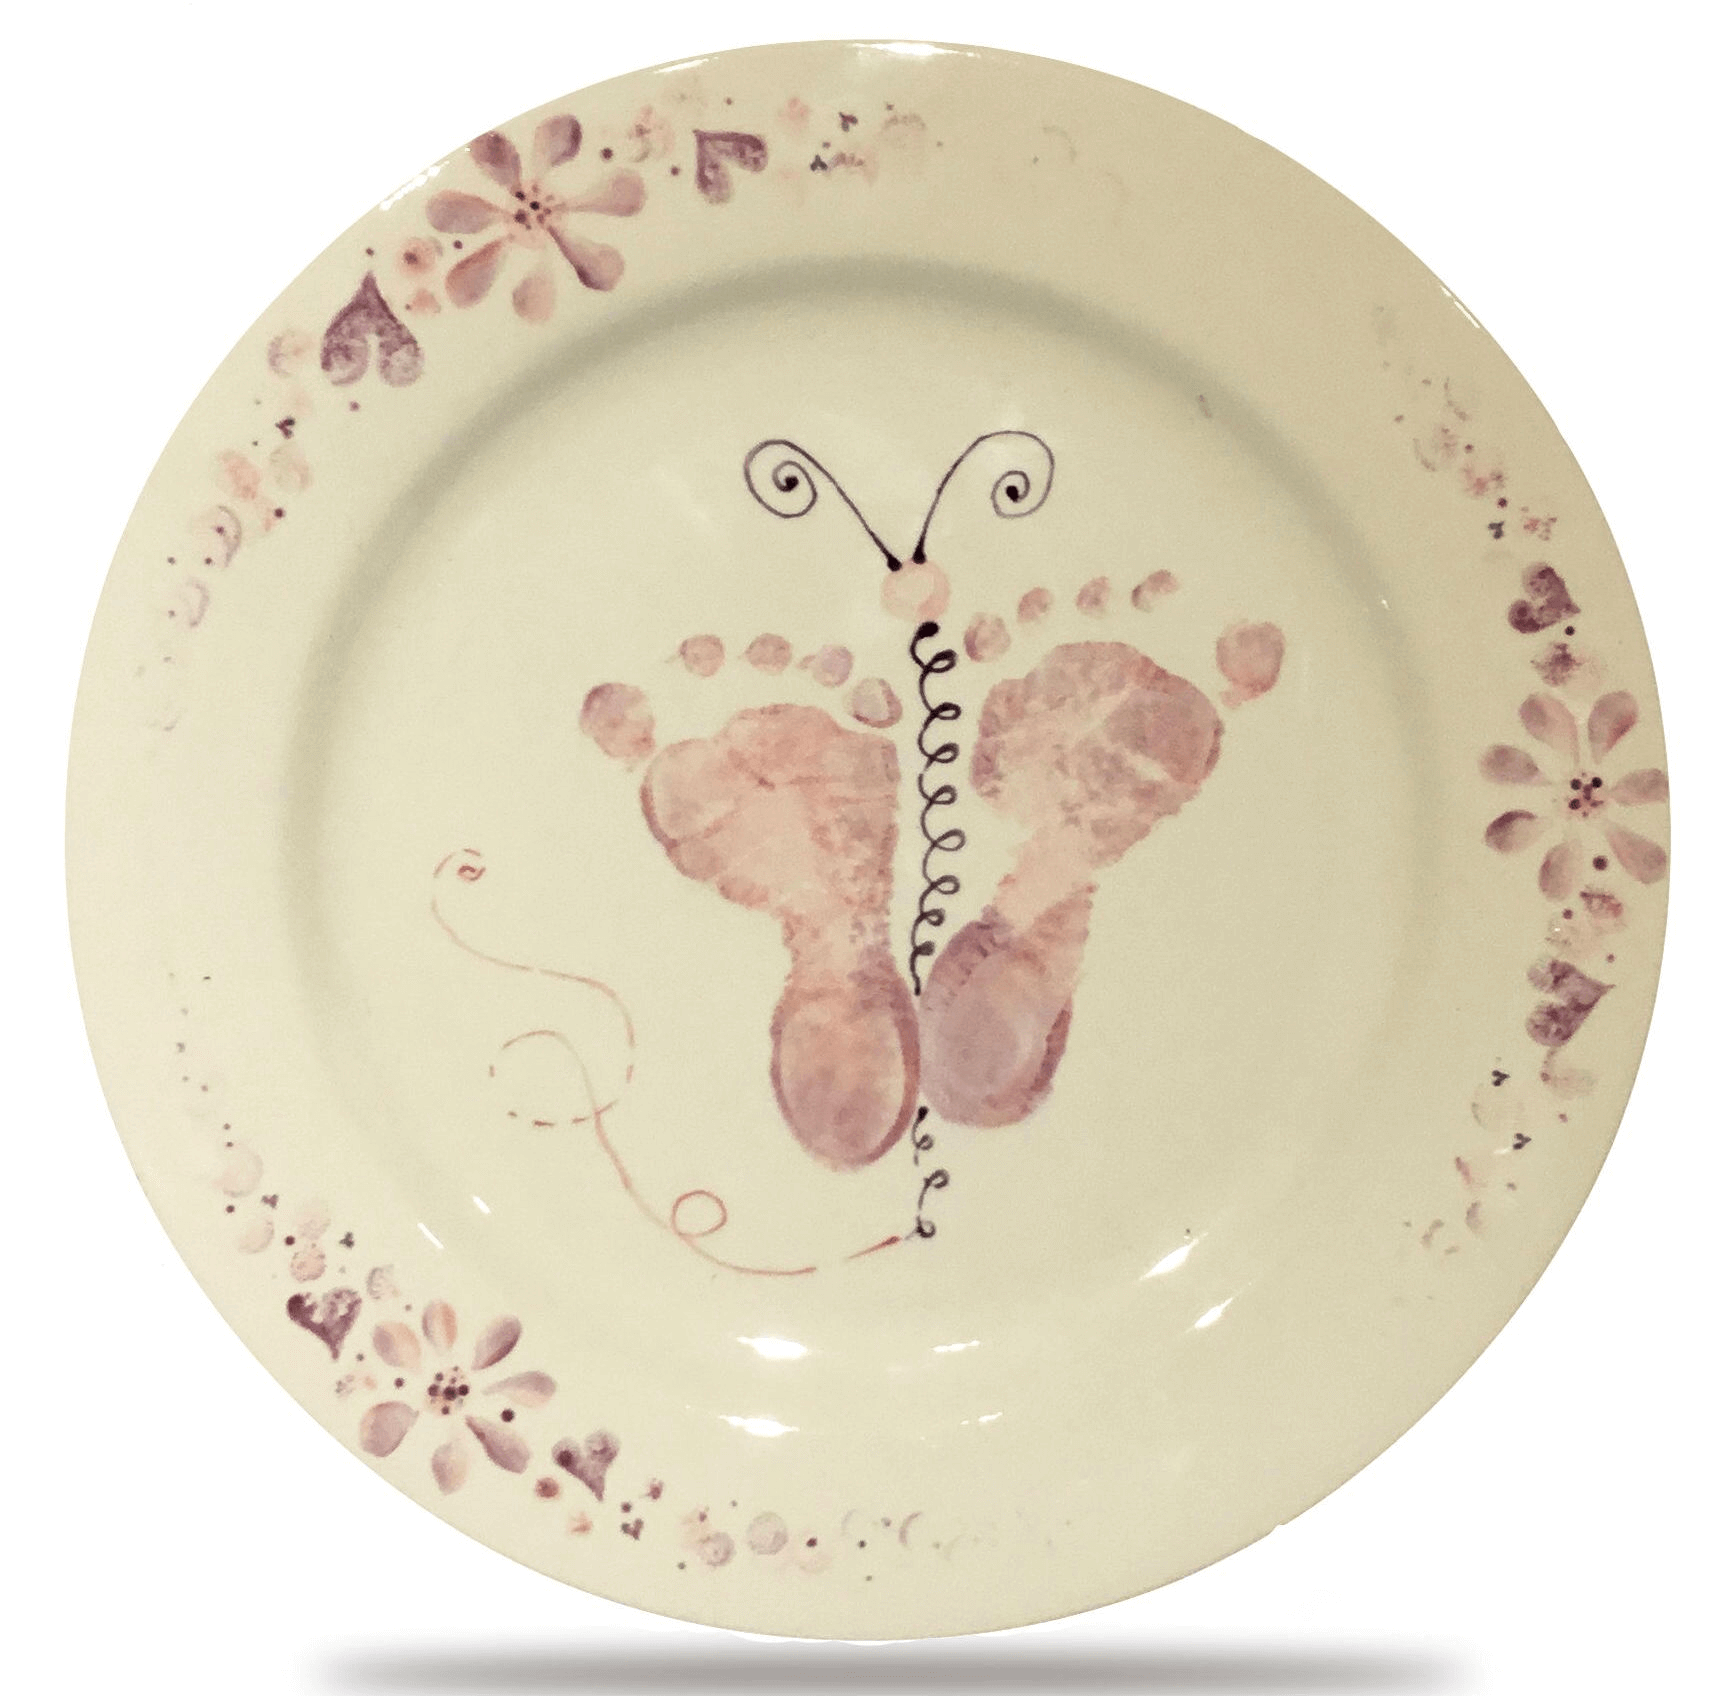 Baby footprint plate